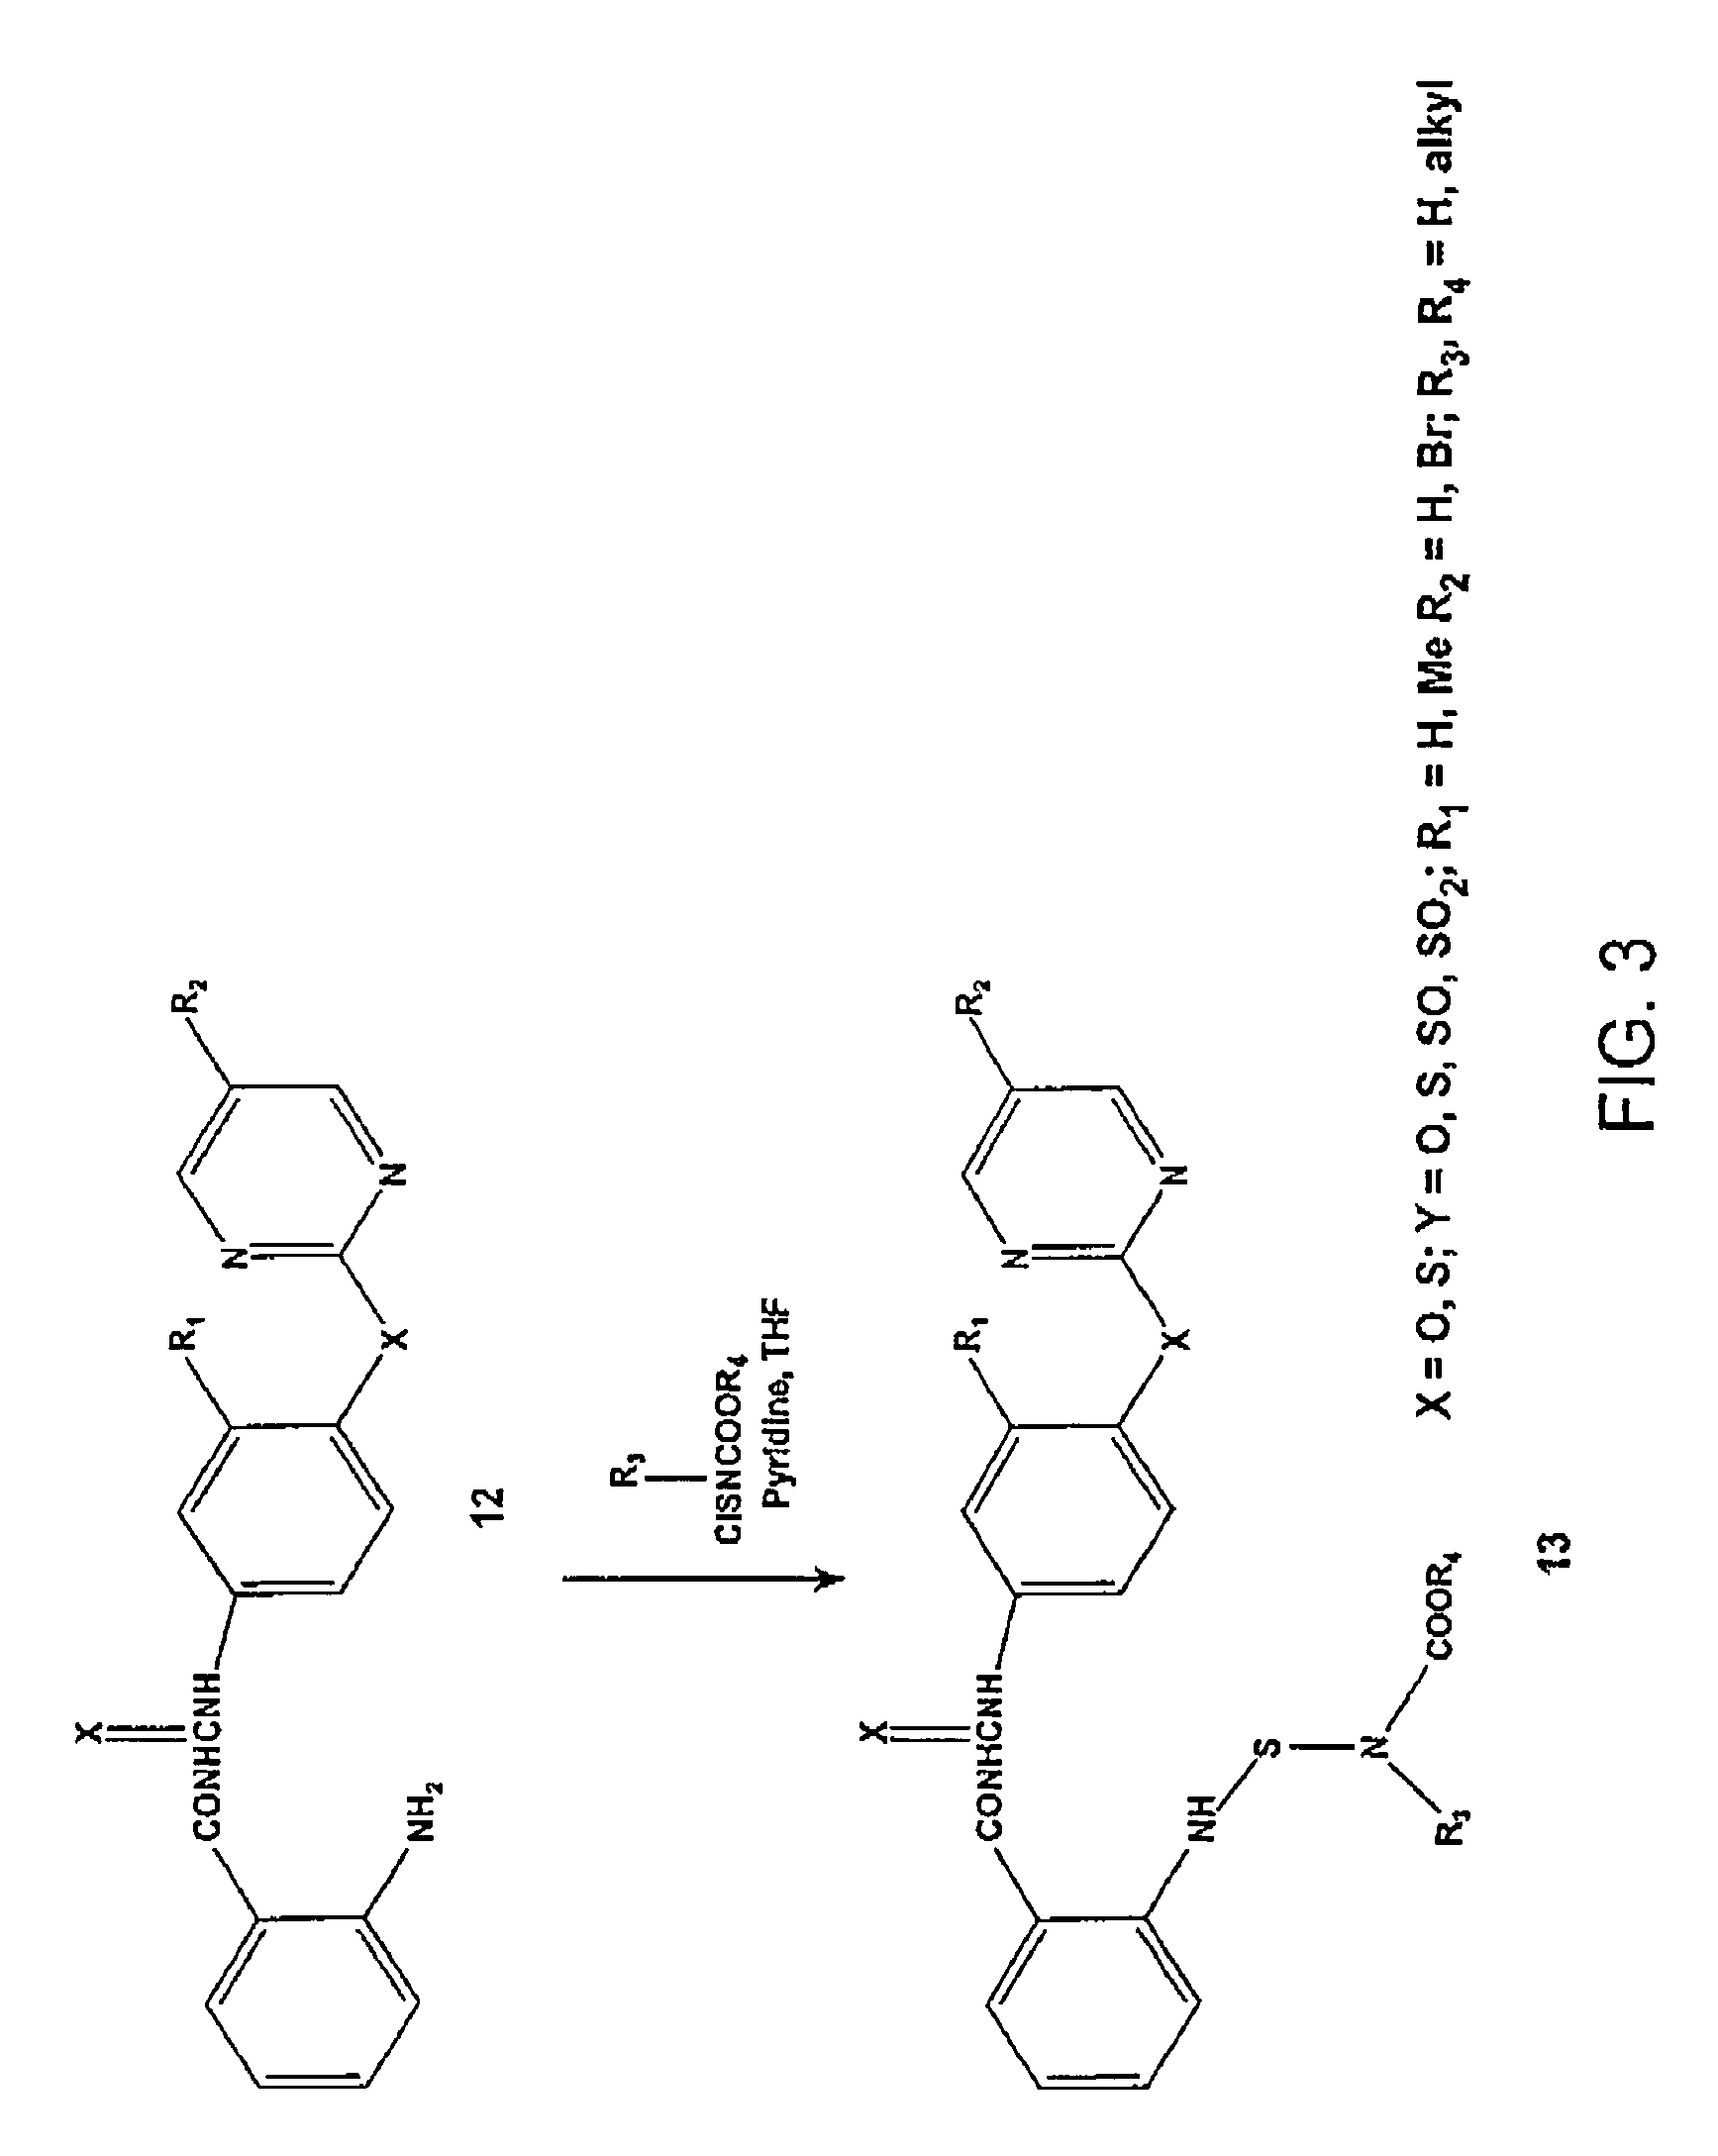 Synthesis of novel tubulin polymerization inhibitors: benzoylphenylurea (BPU) sulfur analogs